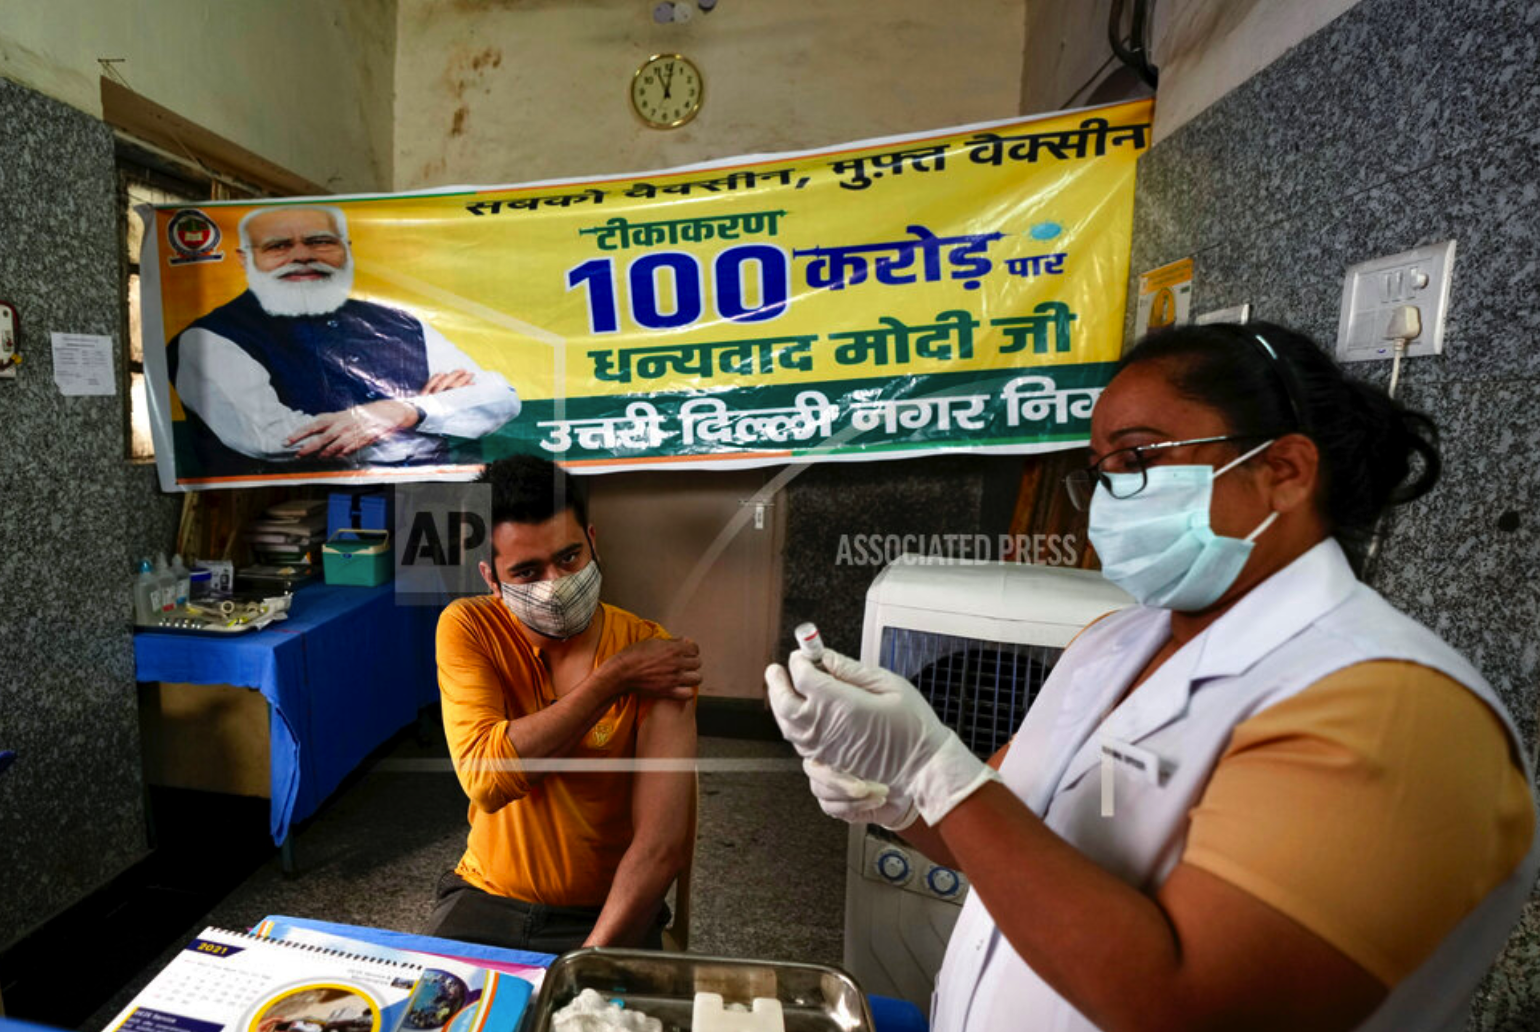 India celebrates 1 billion Covid vaccine doses